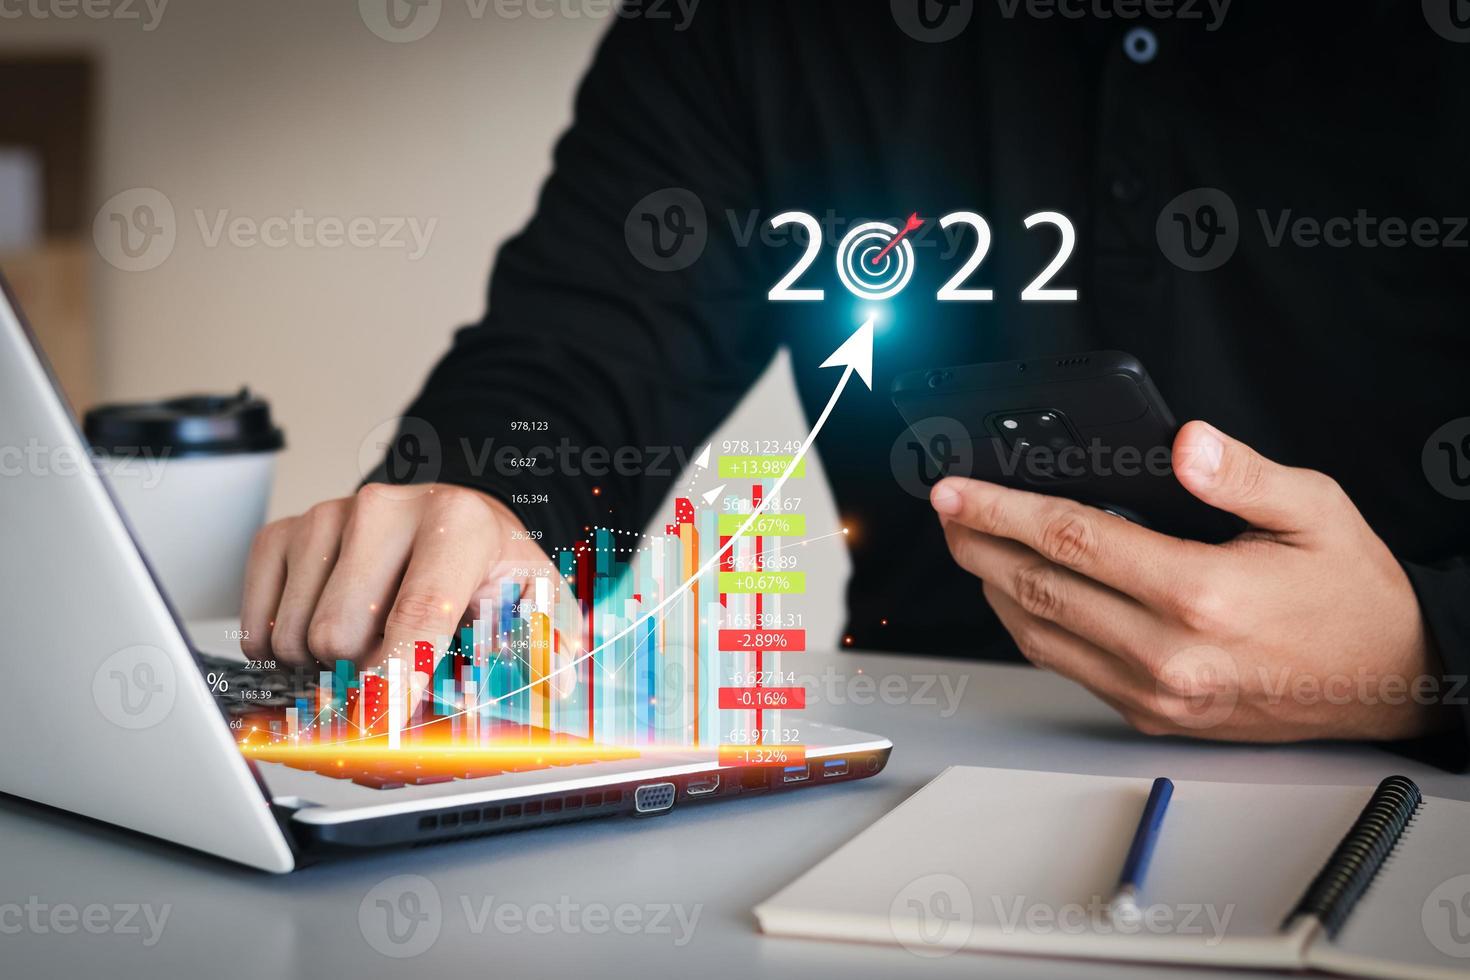 conceptos de análisis empresarial y conceptos financieros, planes de crecimiento empresarial y adición de indicadores positivos de crecimiento empresarial y financiero en 2022. foto